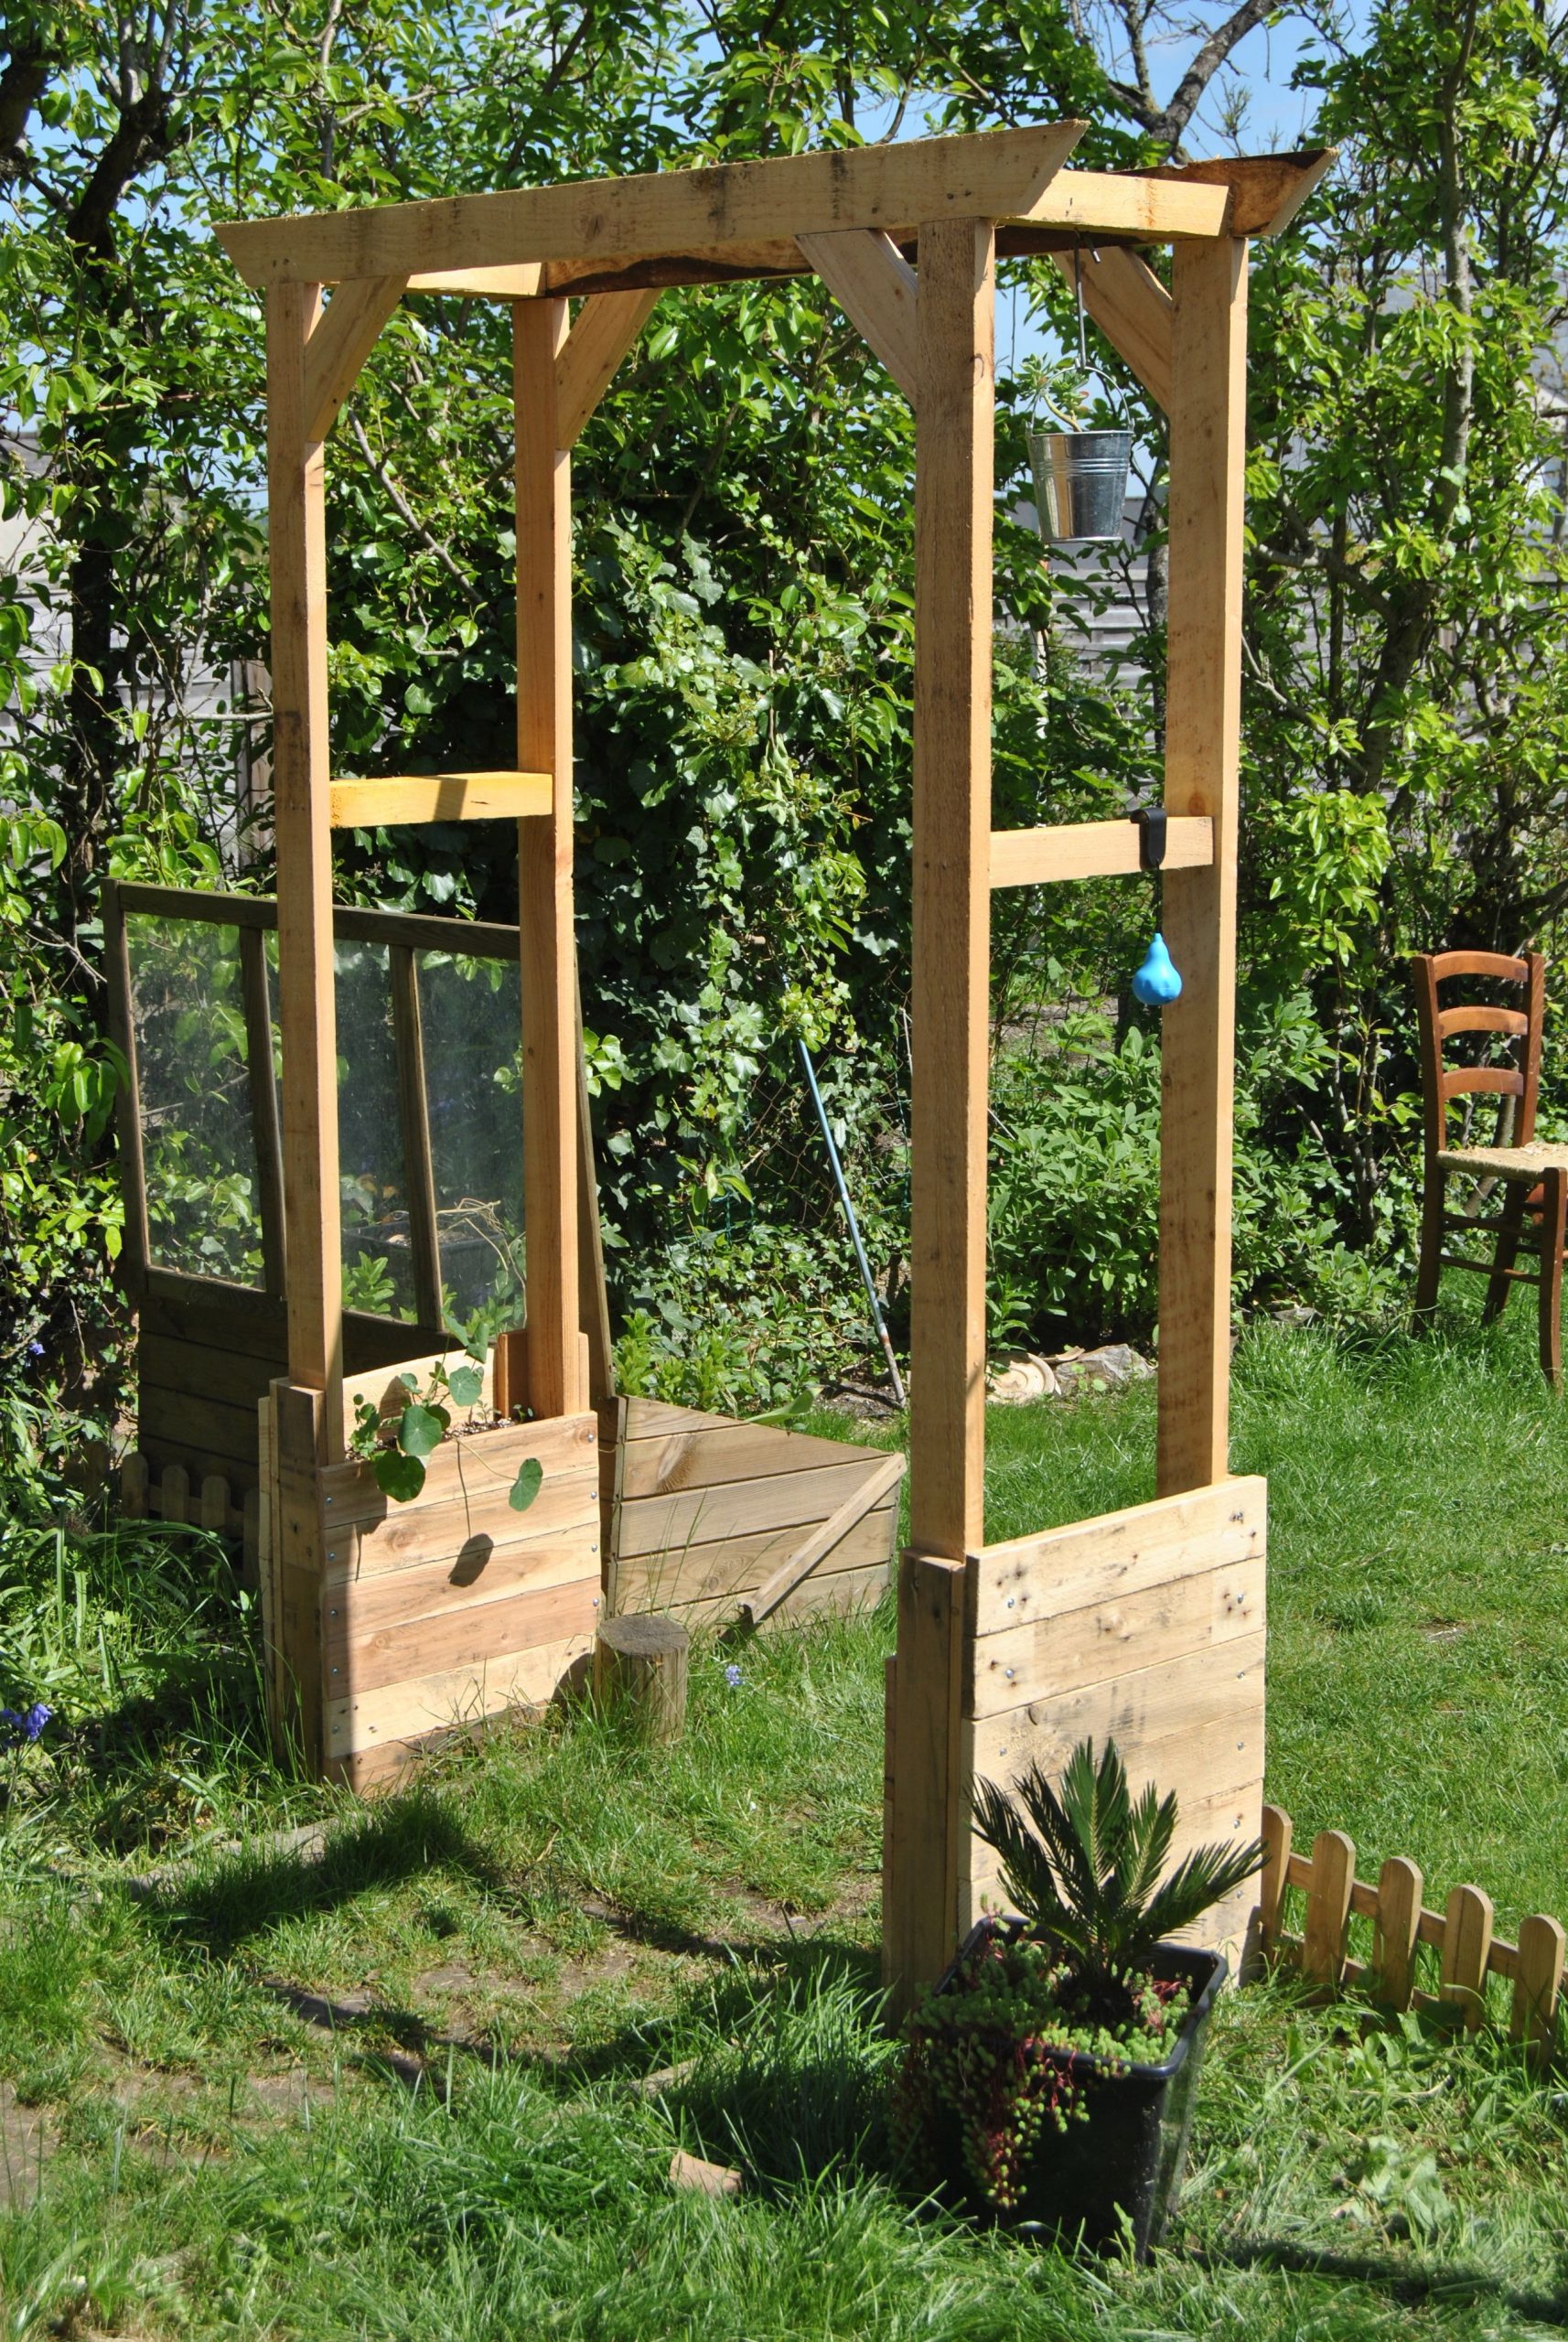 Votre Magazine Pour Le Bricolage Et Le Jardinage | Arche ... concernant Arche Jardin Bois